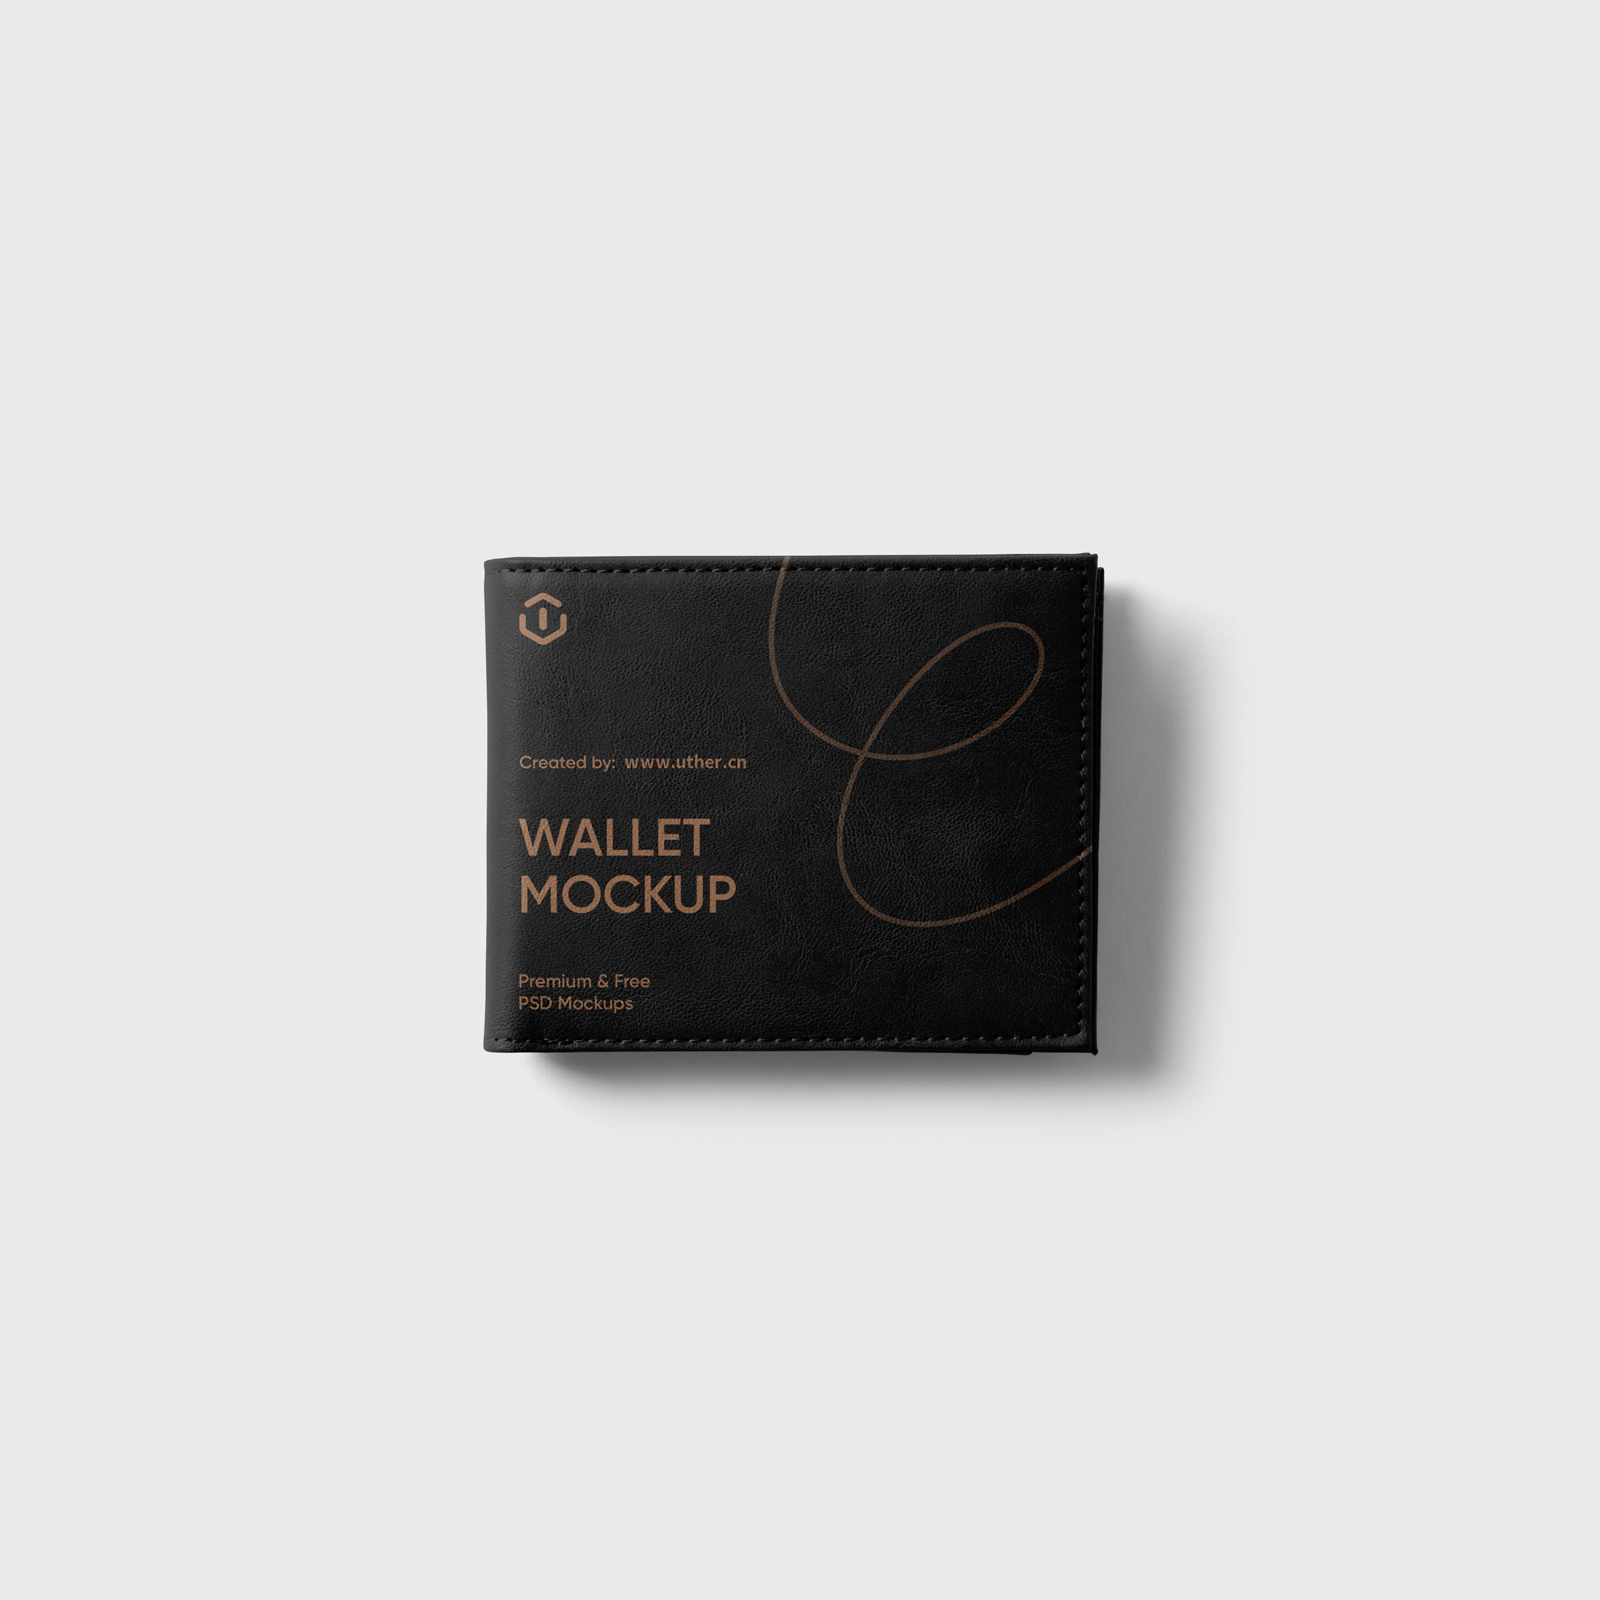 黑色皮夹钱包样机模型Wallet Mockup .psd素材